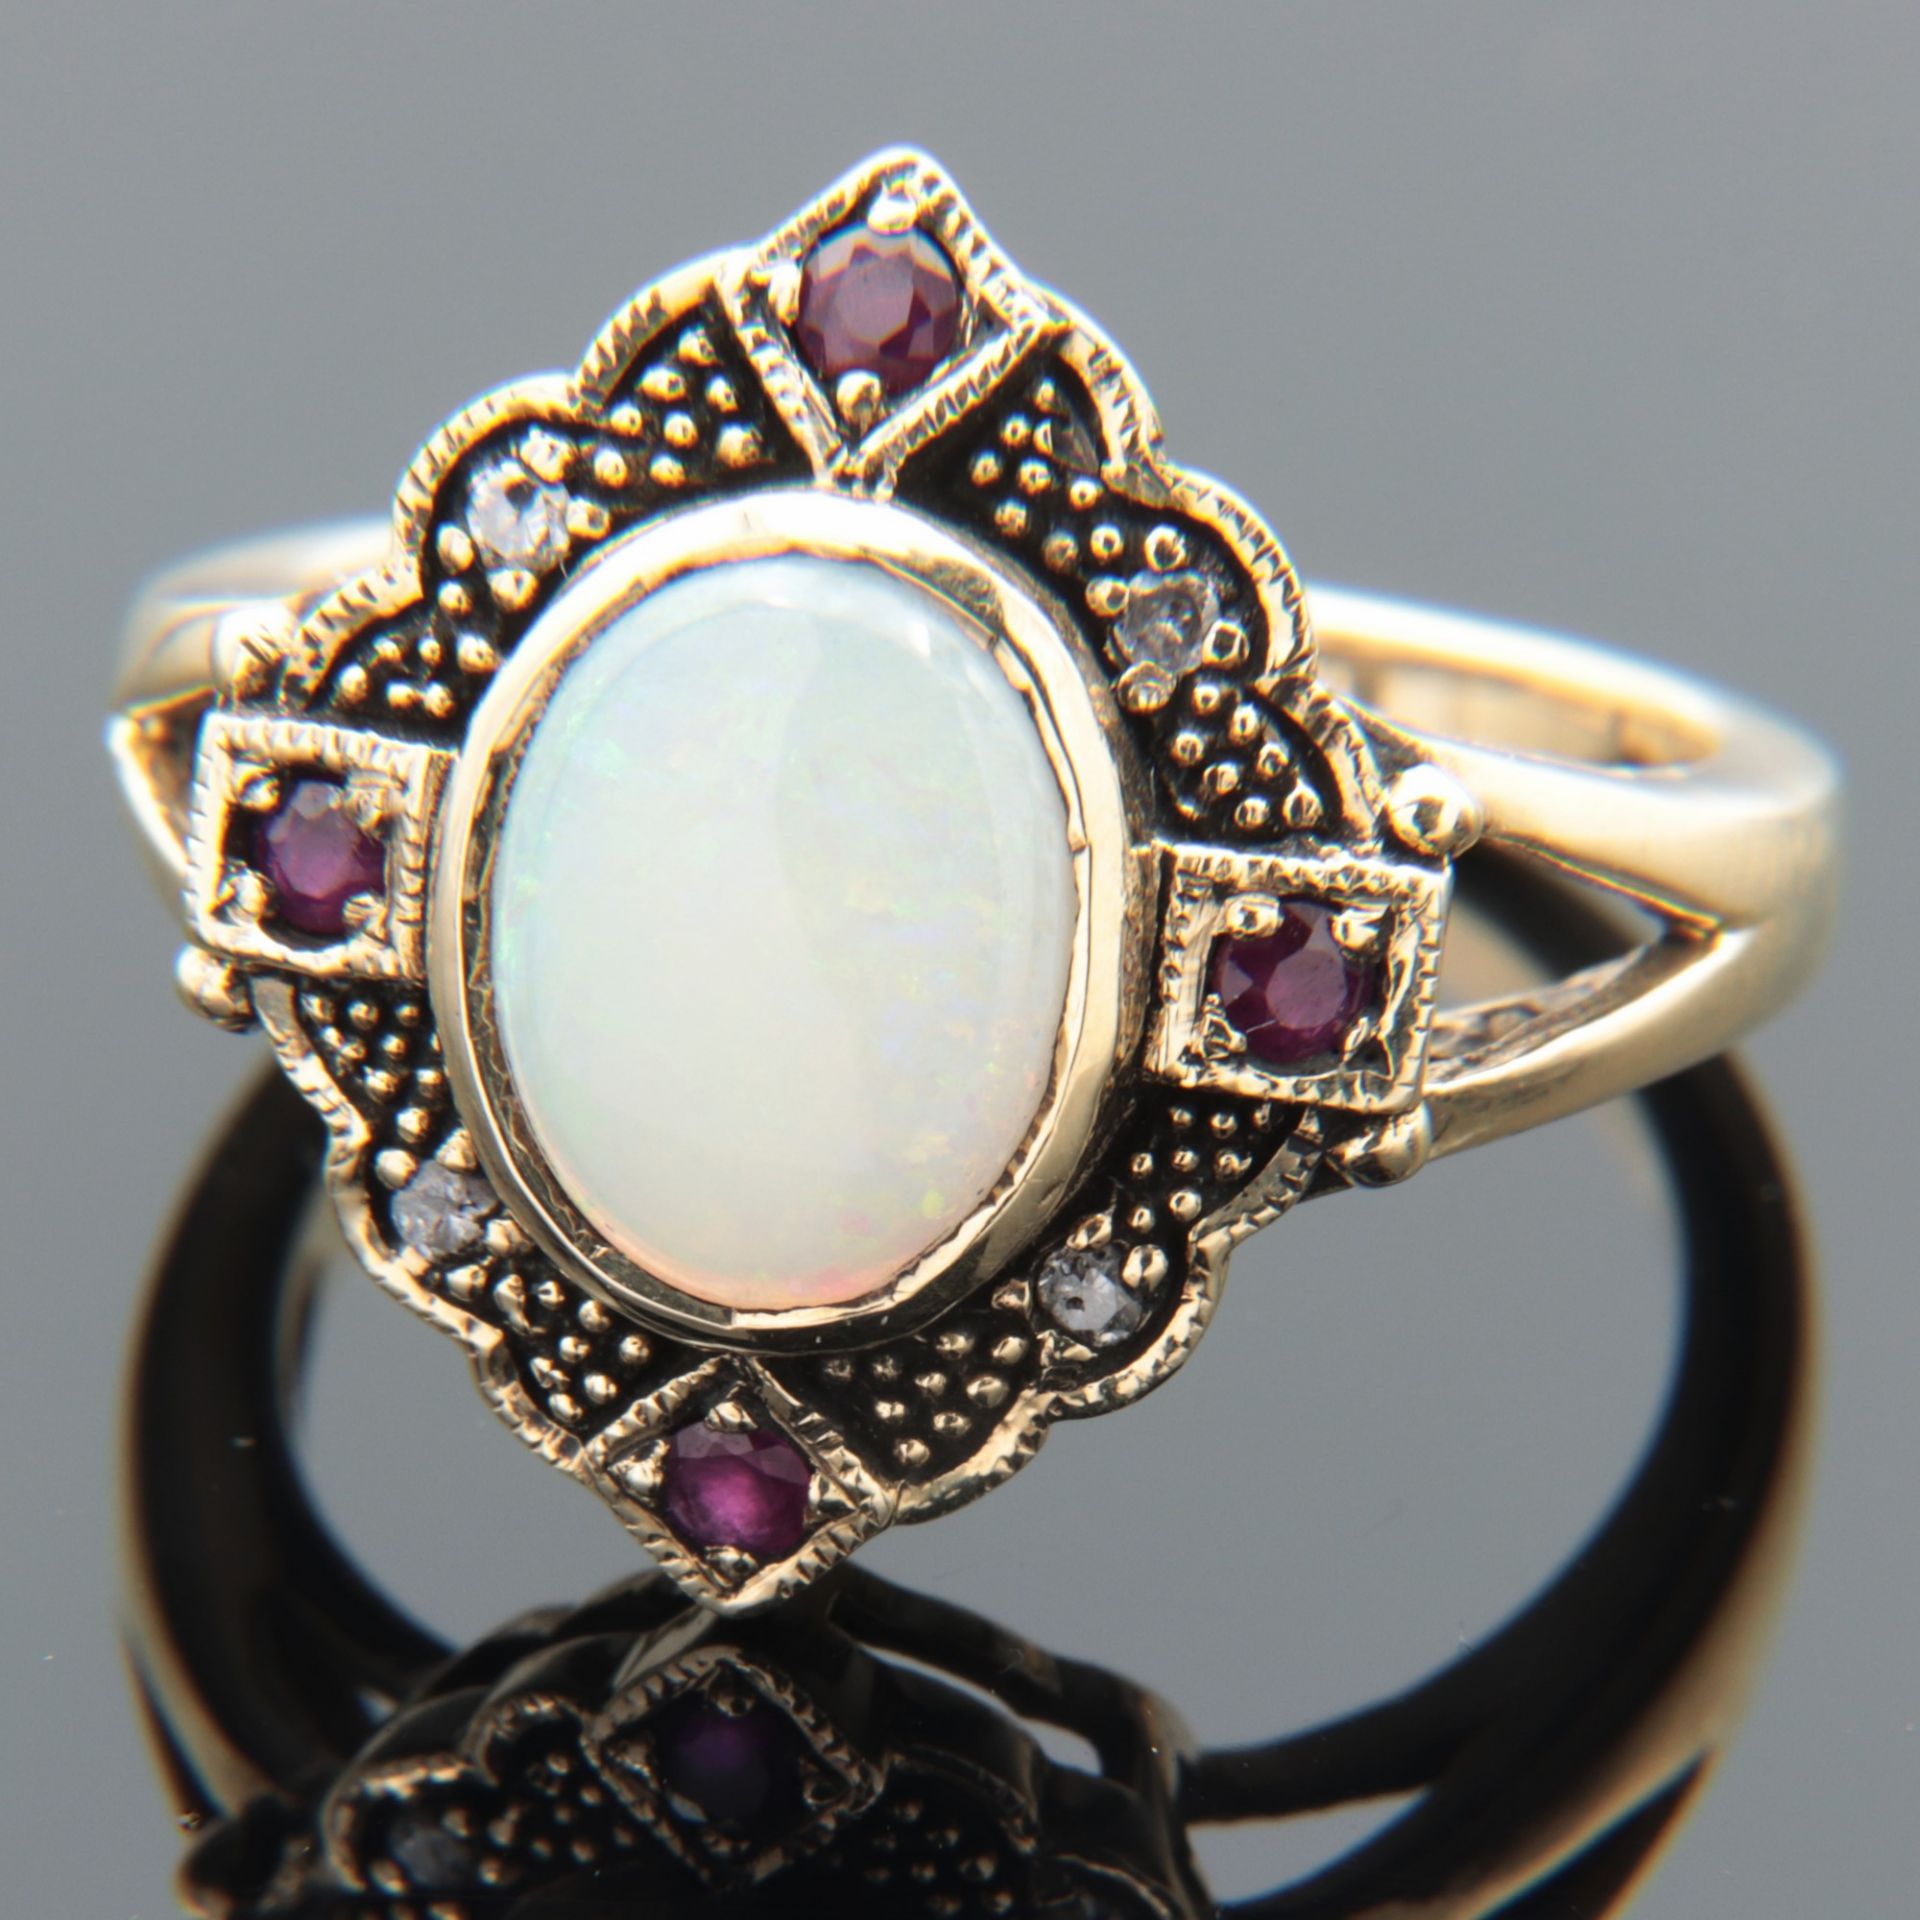 Diamant/Opal - Damenring GG 375, leicht rautenförmiger Ringkopf, mittig besetzt mit einem Opal-